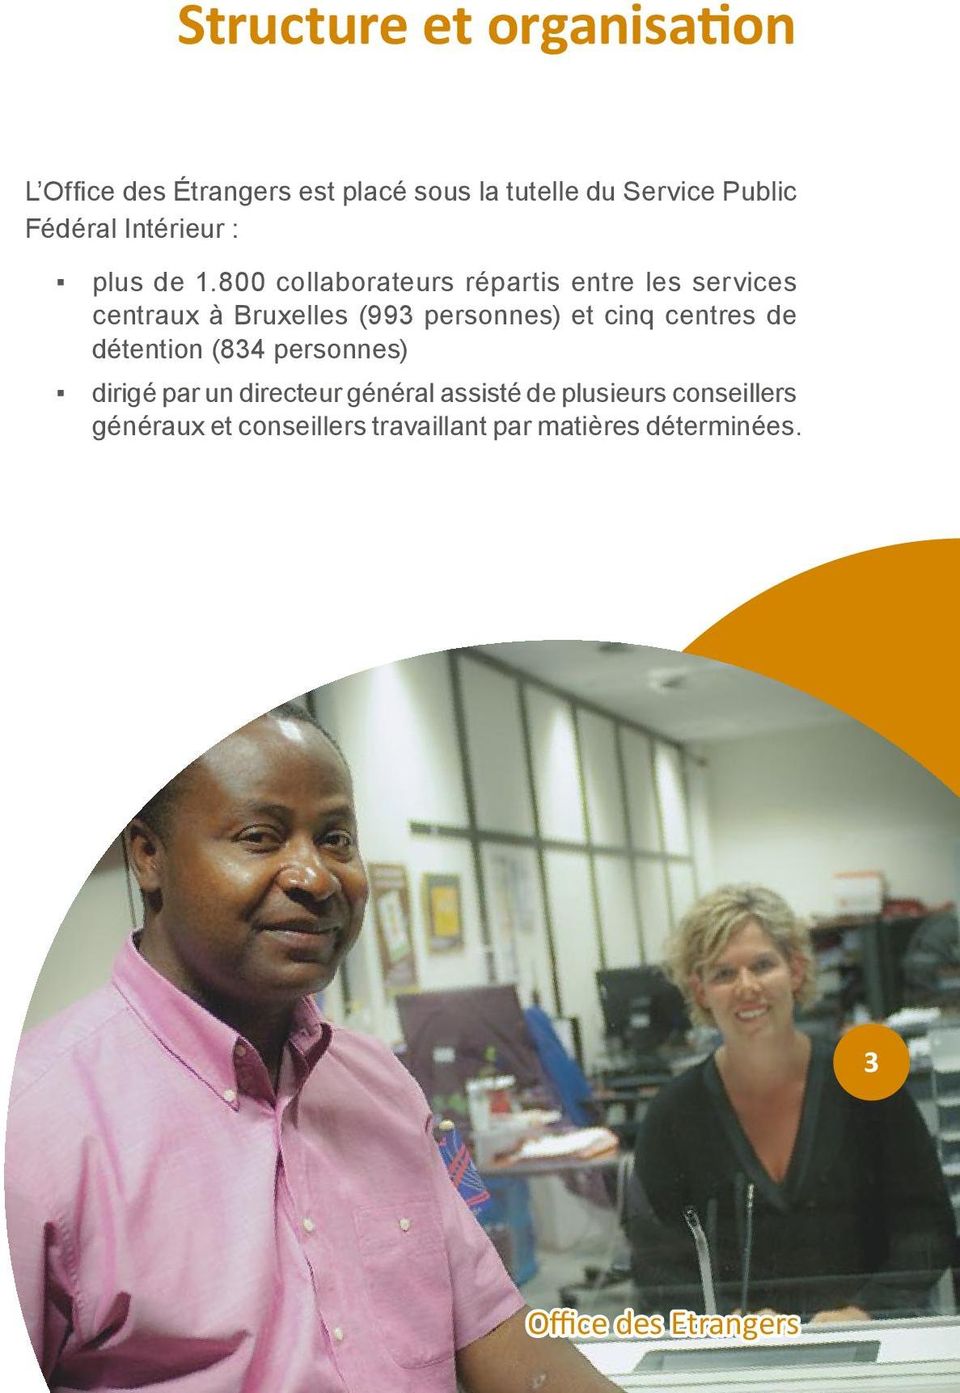 800 collaborateurs répartis entre les services centraux à Bruxelles (993 personnes) et cinq centres